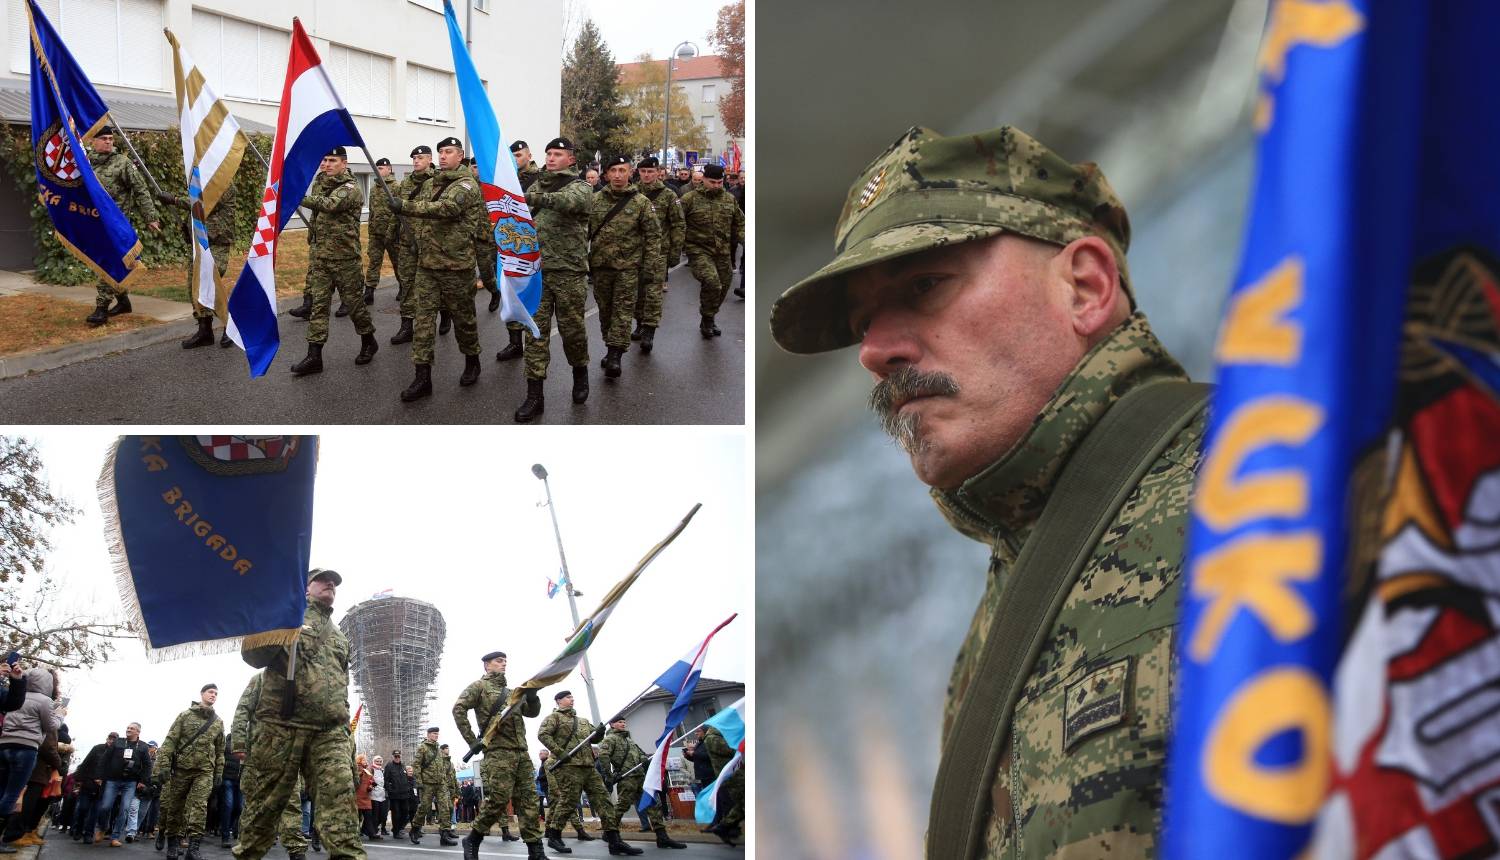 Samuraj iz Vukovara: Zastavu ću nositi makar morao puzati